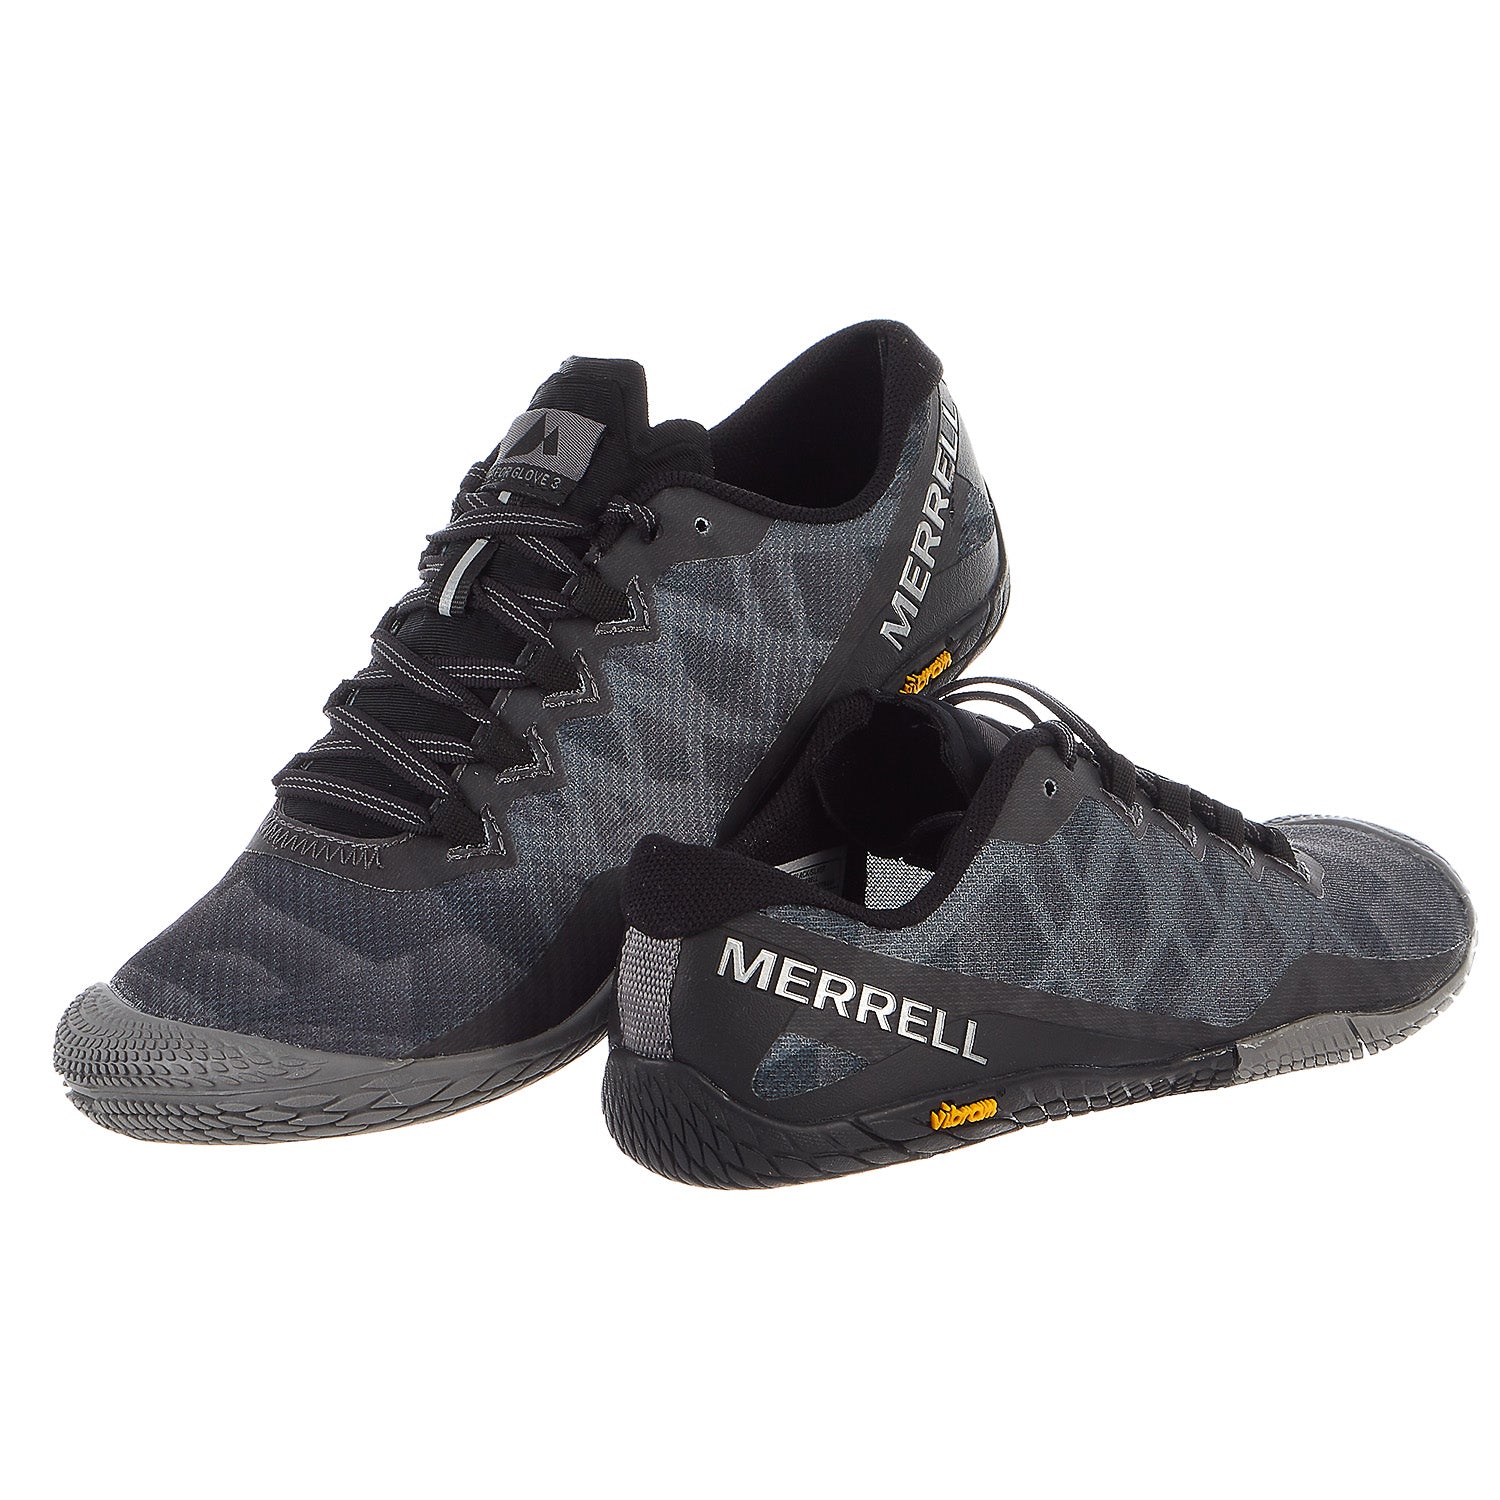 Merrell Vapor Glove 3 Trail Runner - Women's - Shoplifestyle